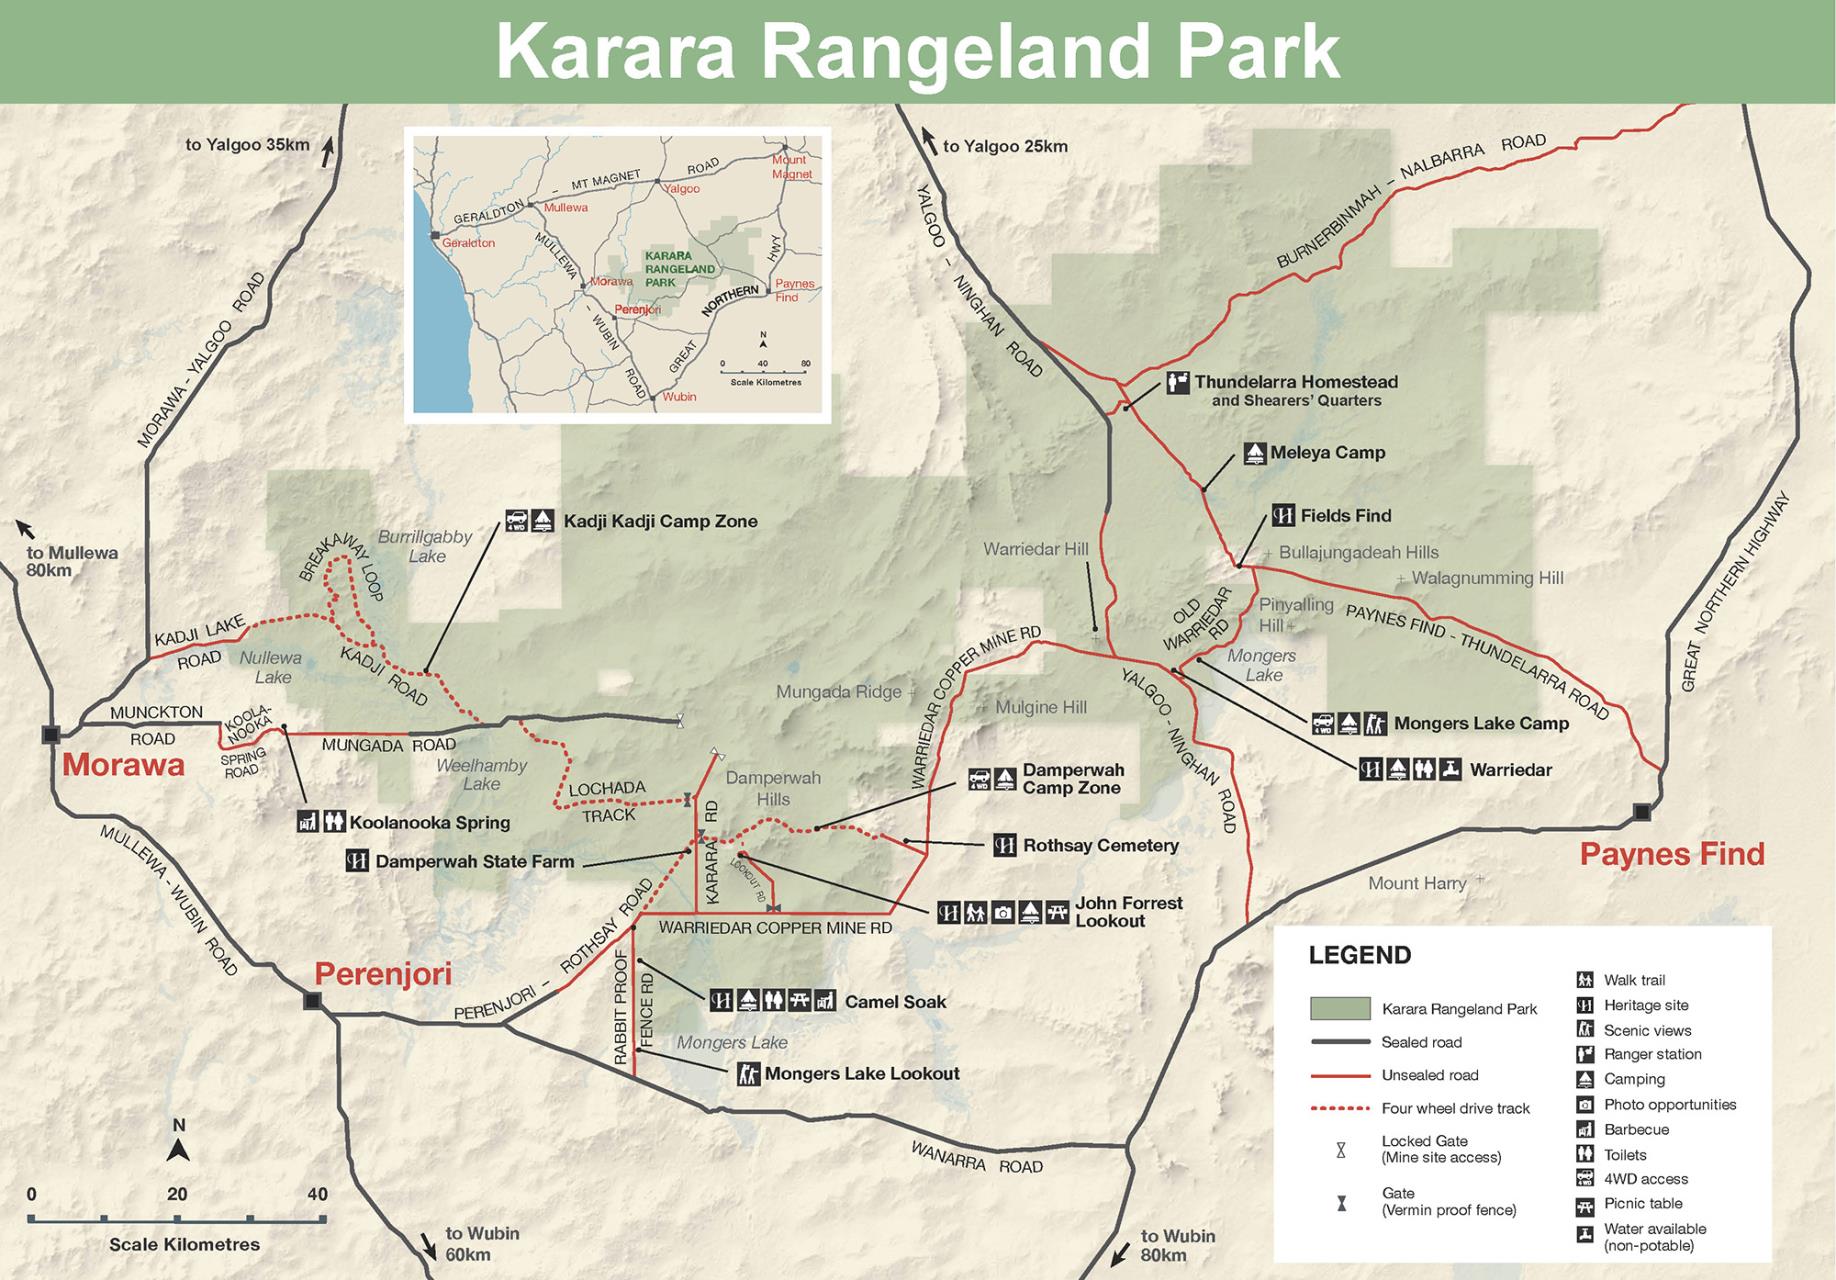 Karara Rangeland Park